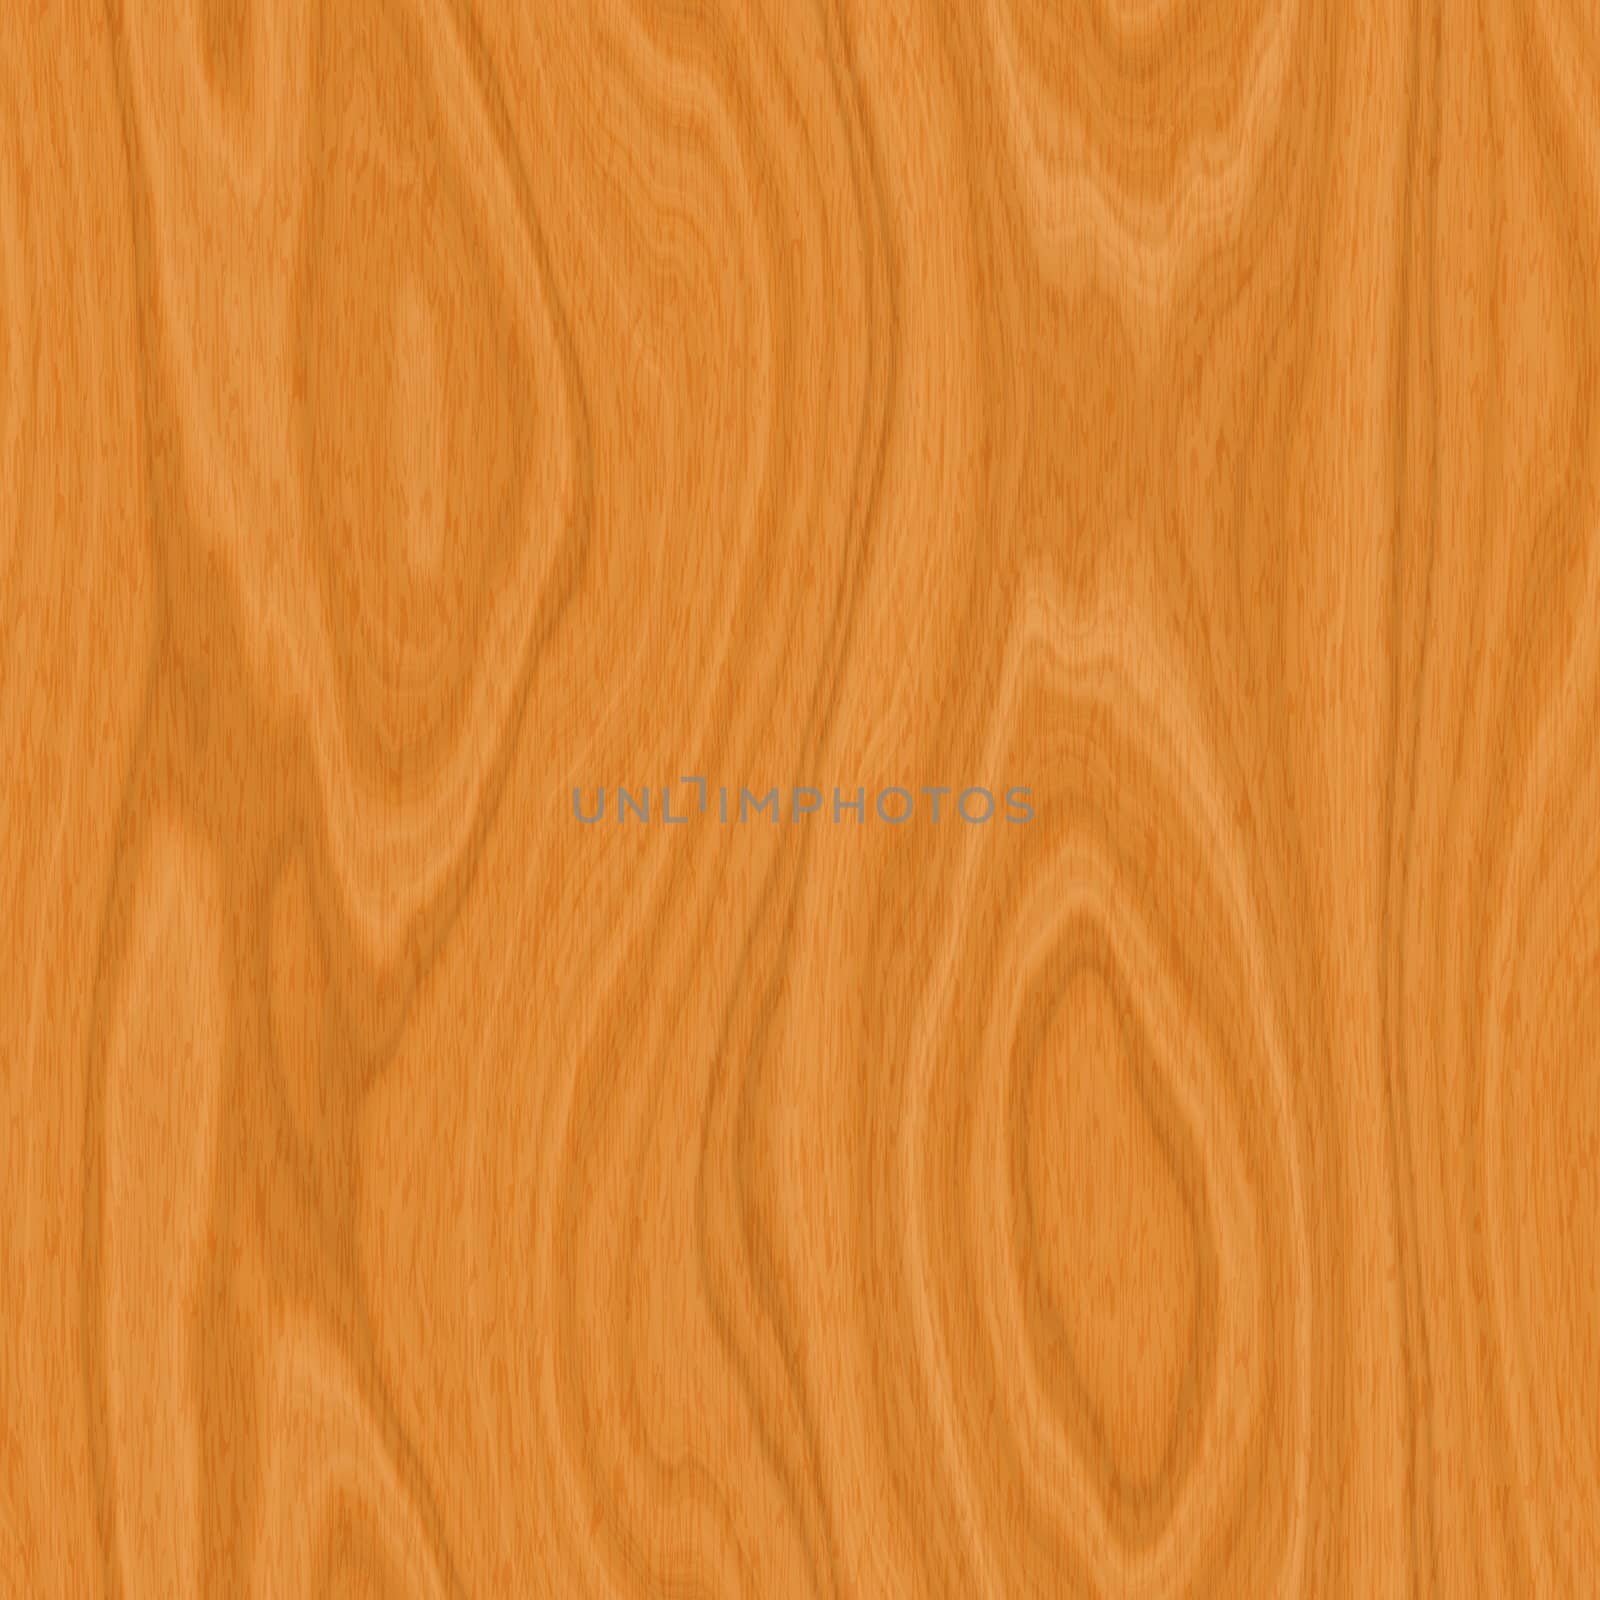 Nice large image of polished wood texture